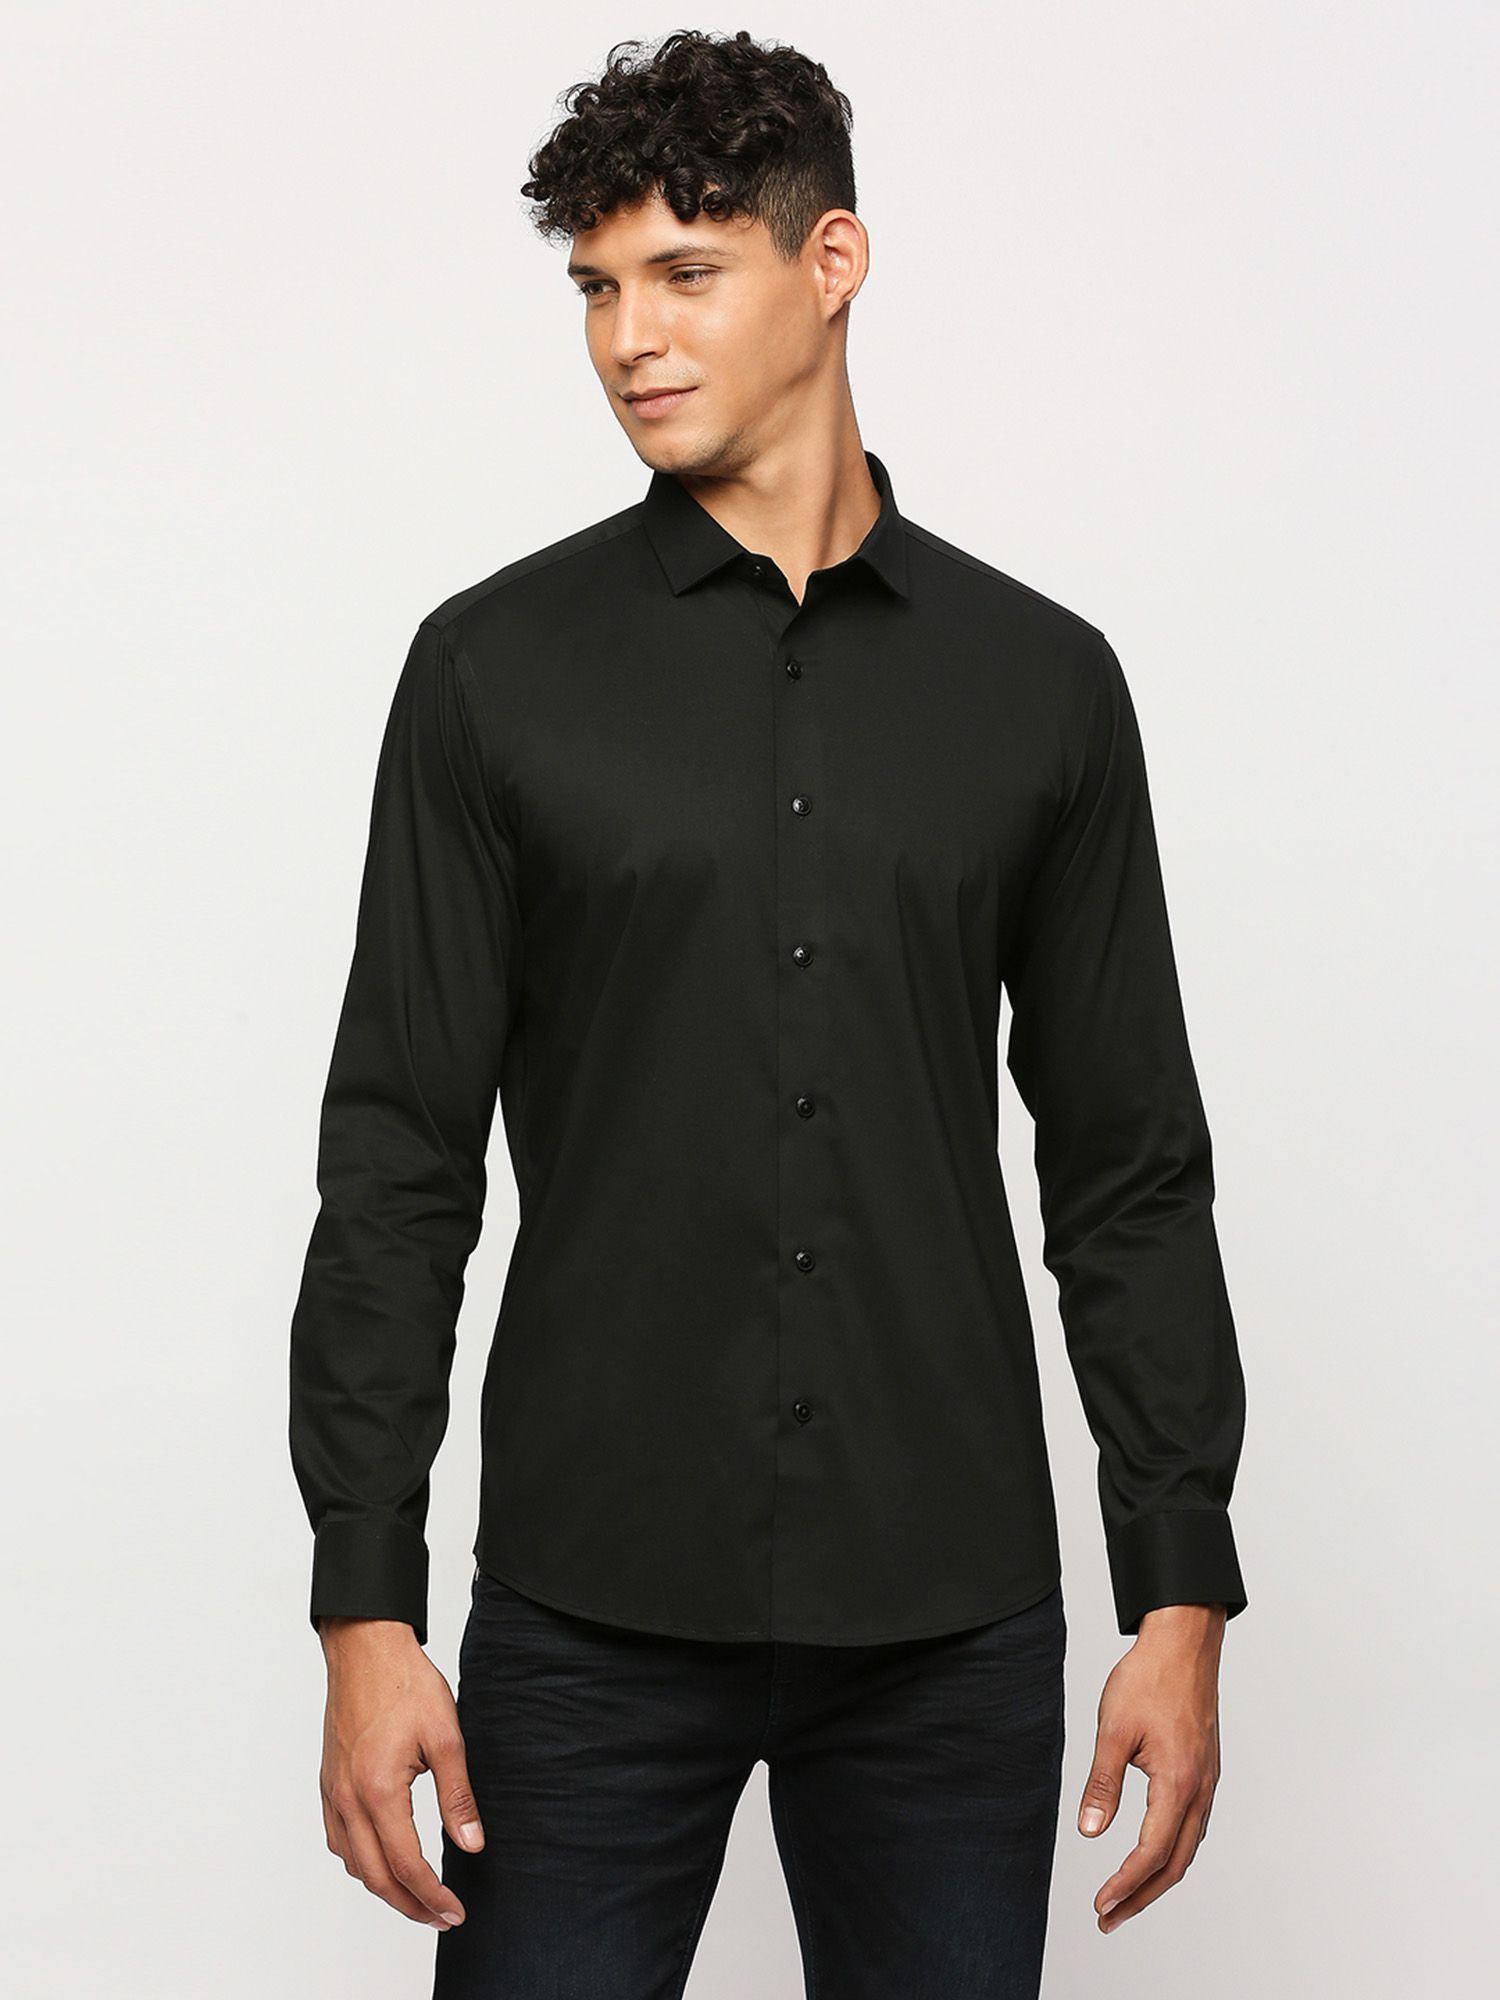 black full sleeves shirt